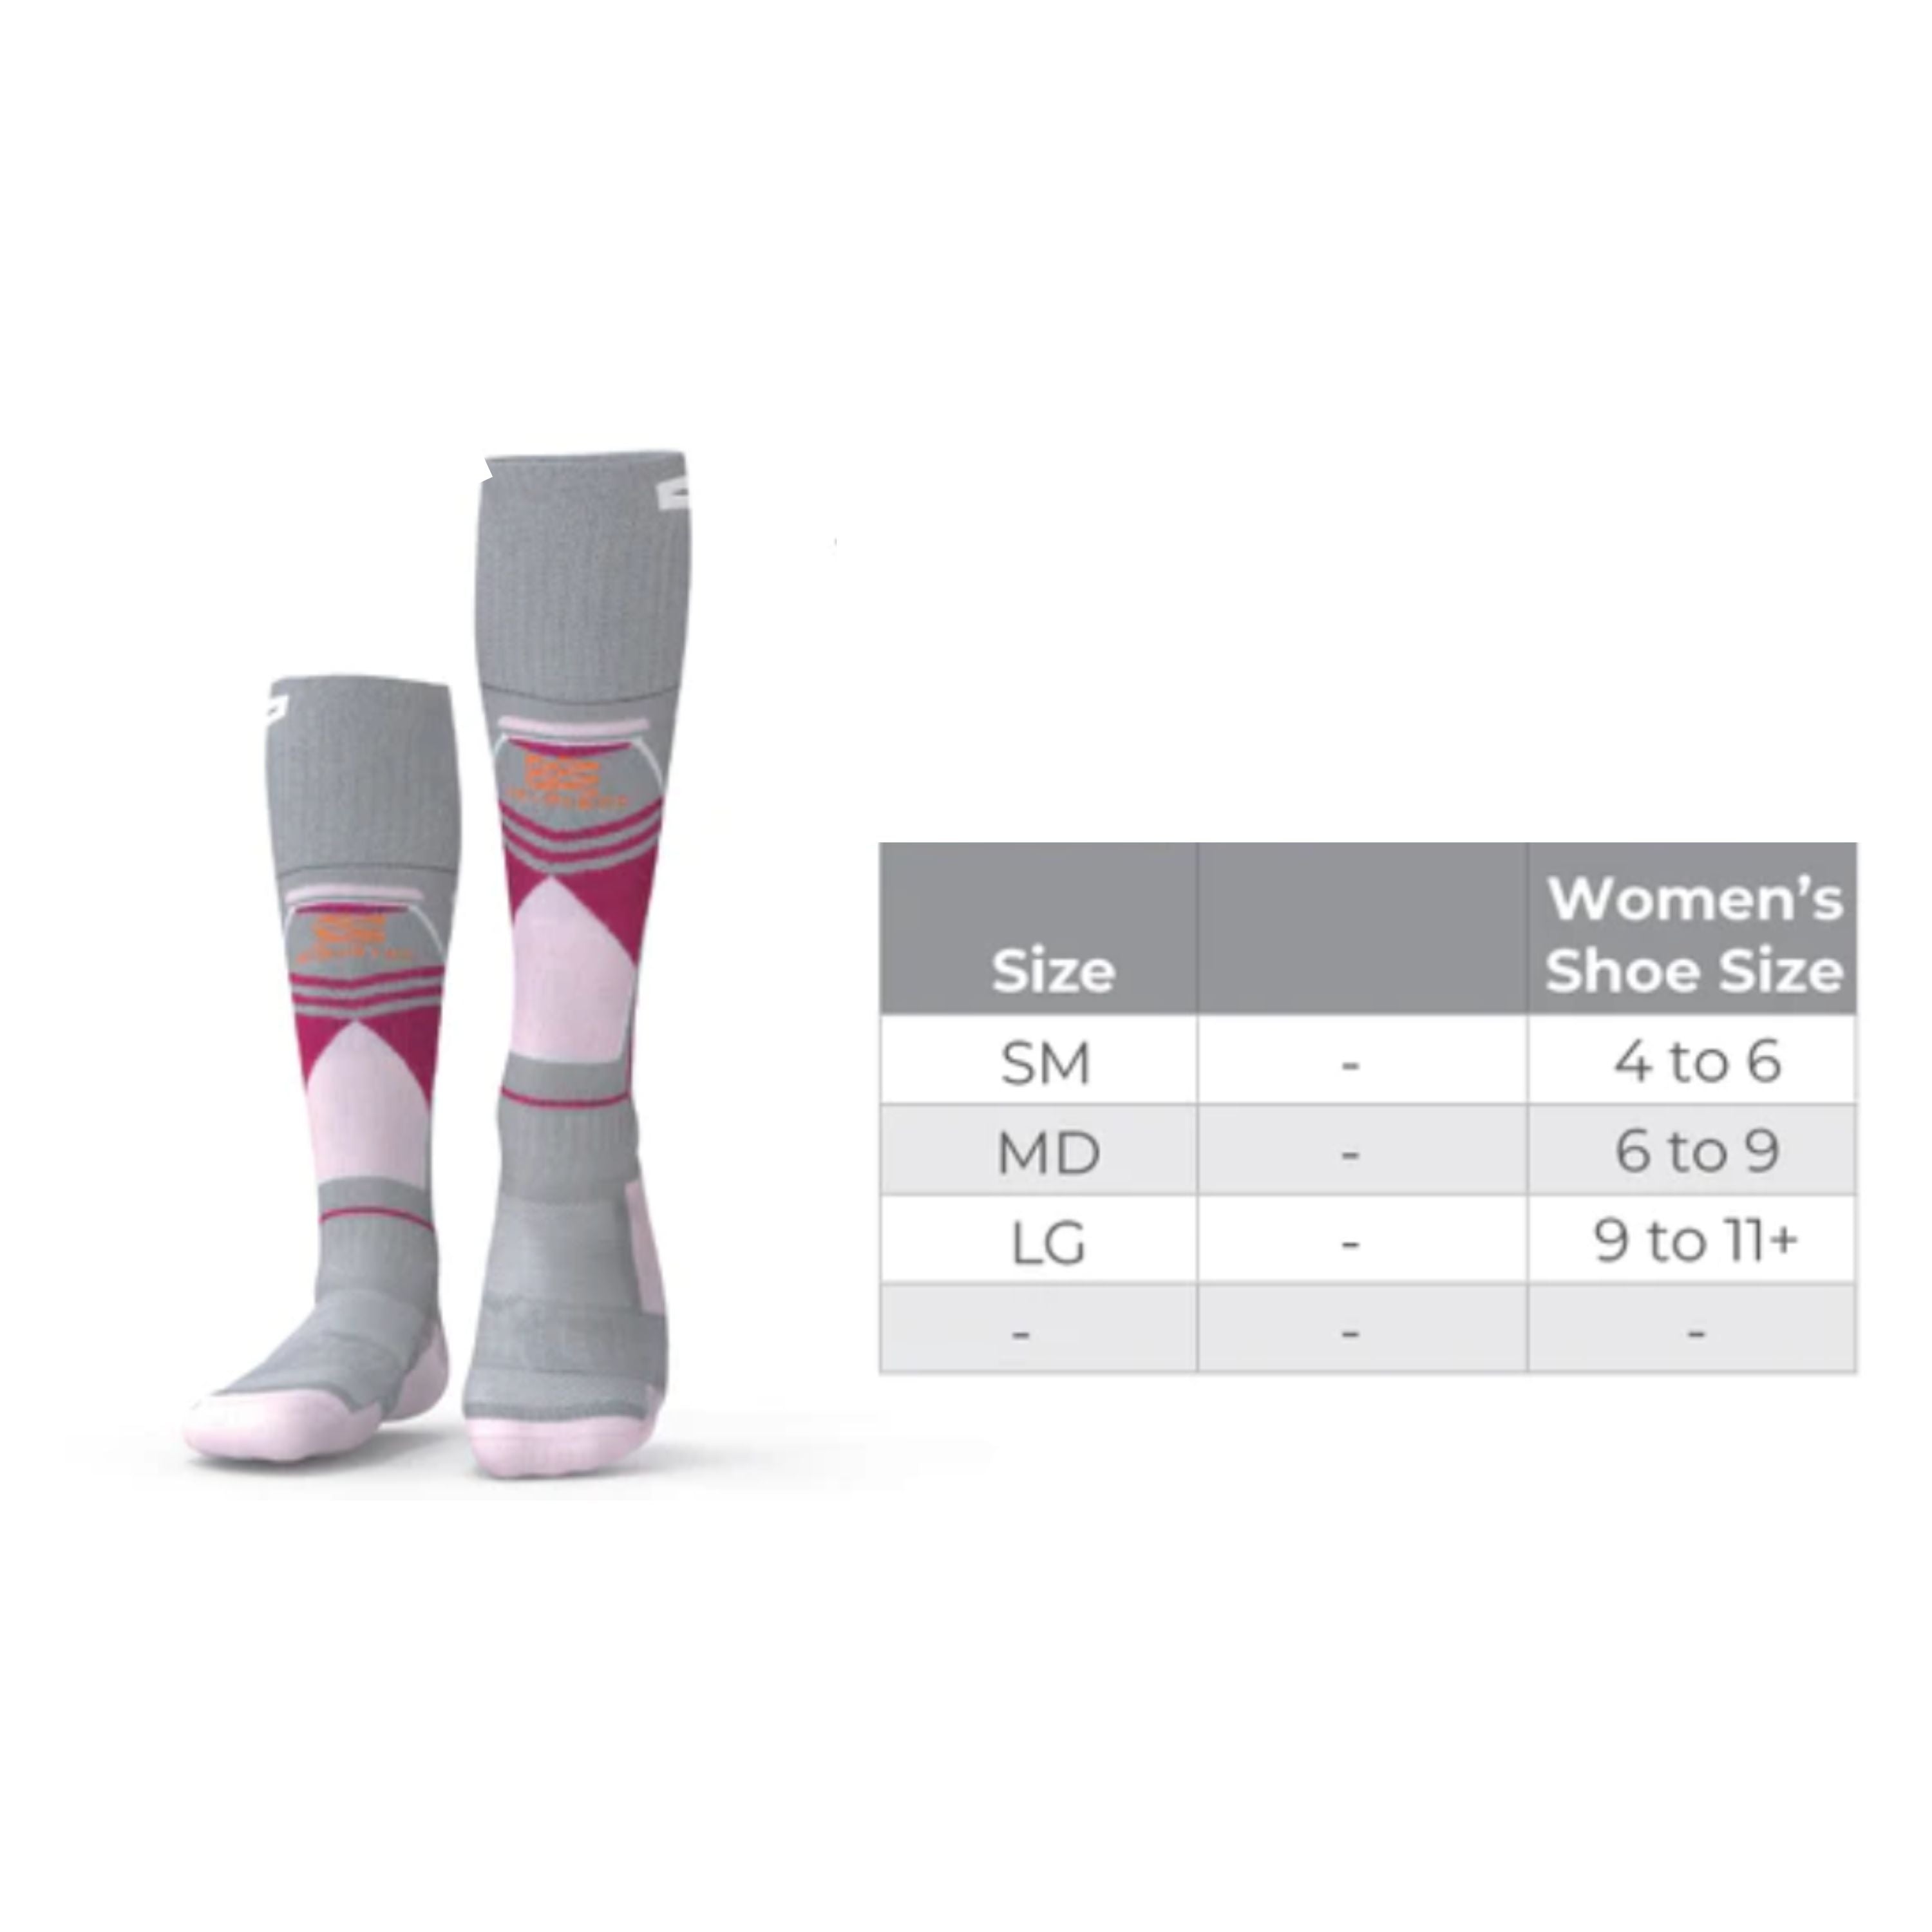 "Premium 2.0" Merino heated socks - Women's